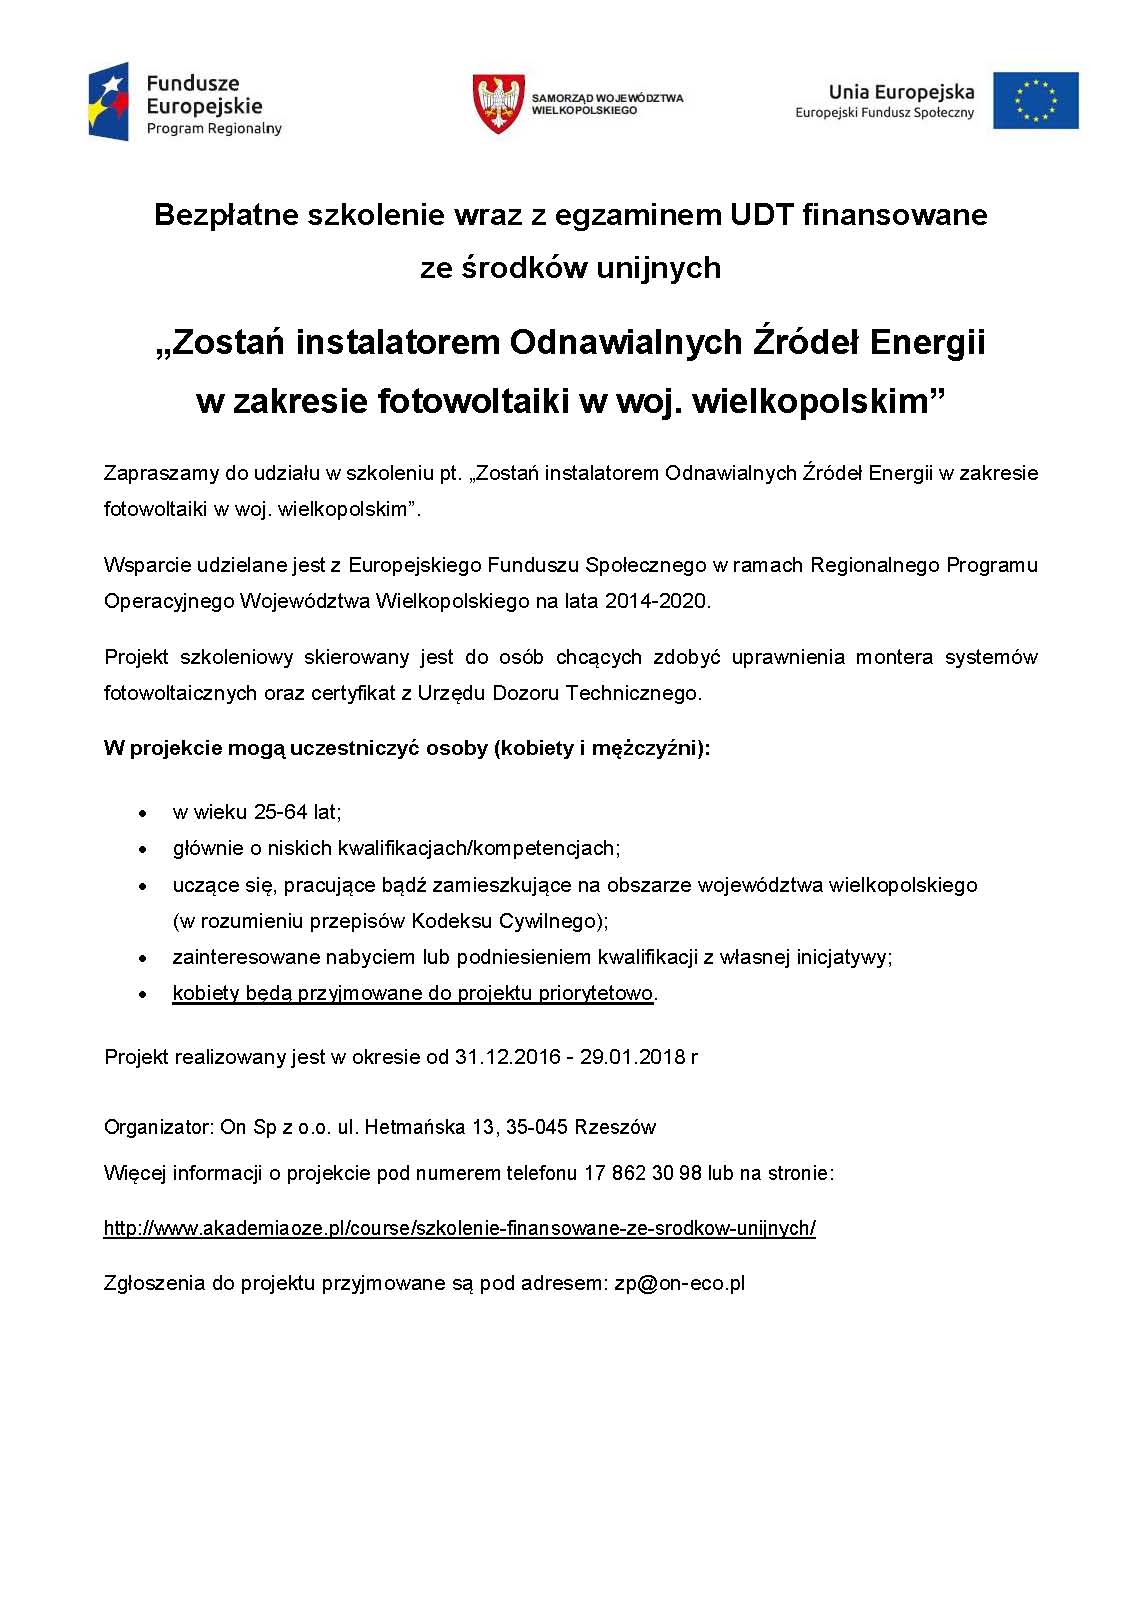 Zostań instalatorem Odnawialnych Źródeł Energii w zakresie fotowoltaiki w woj. wielkopolskim